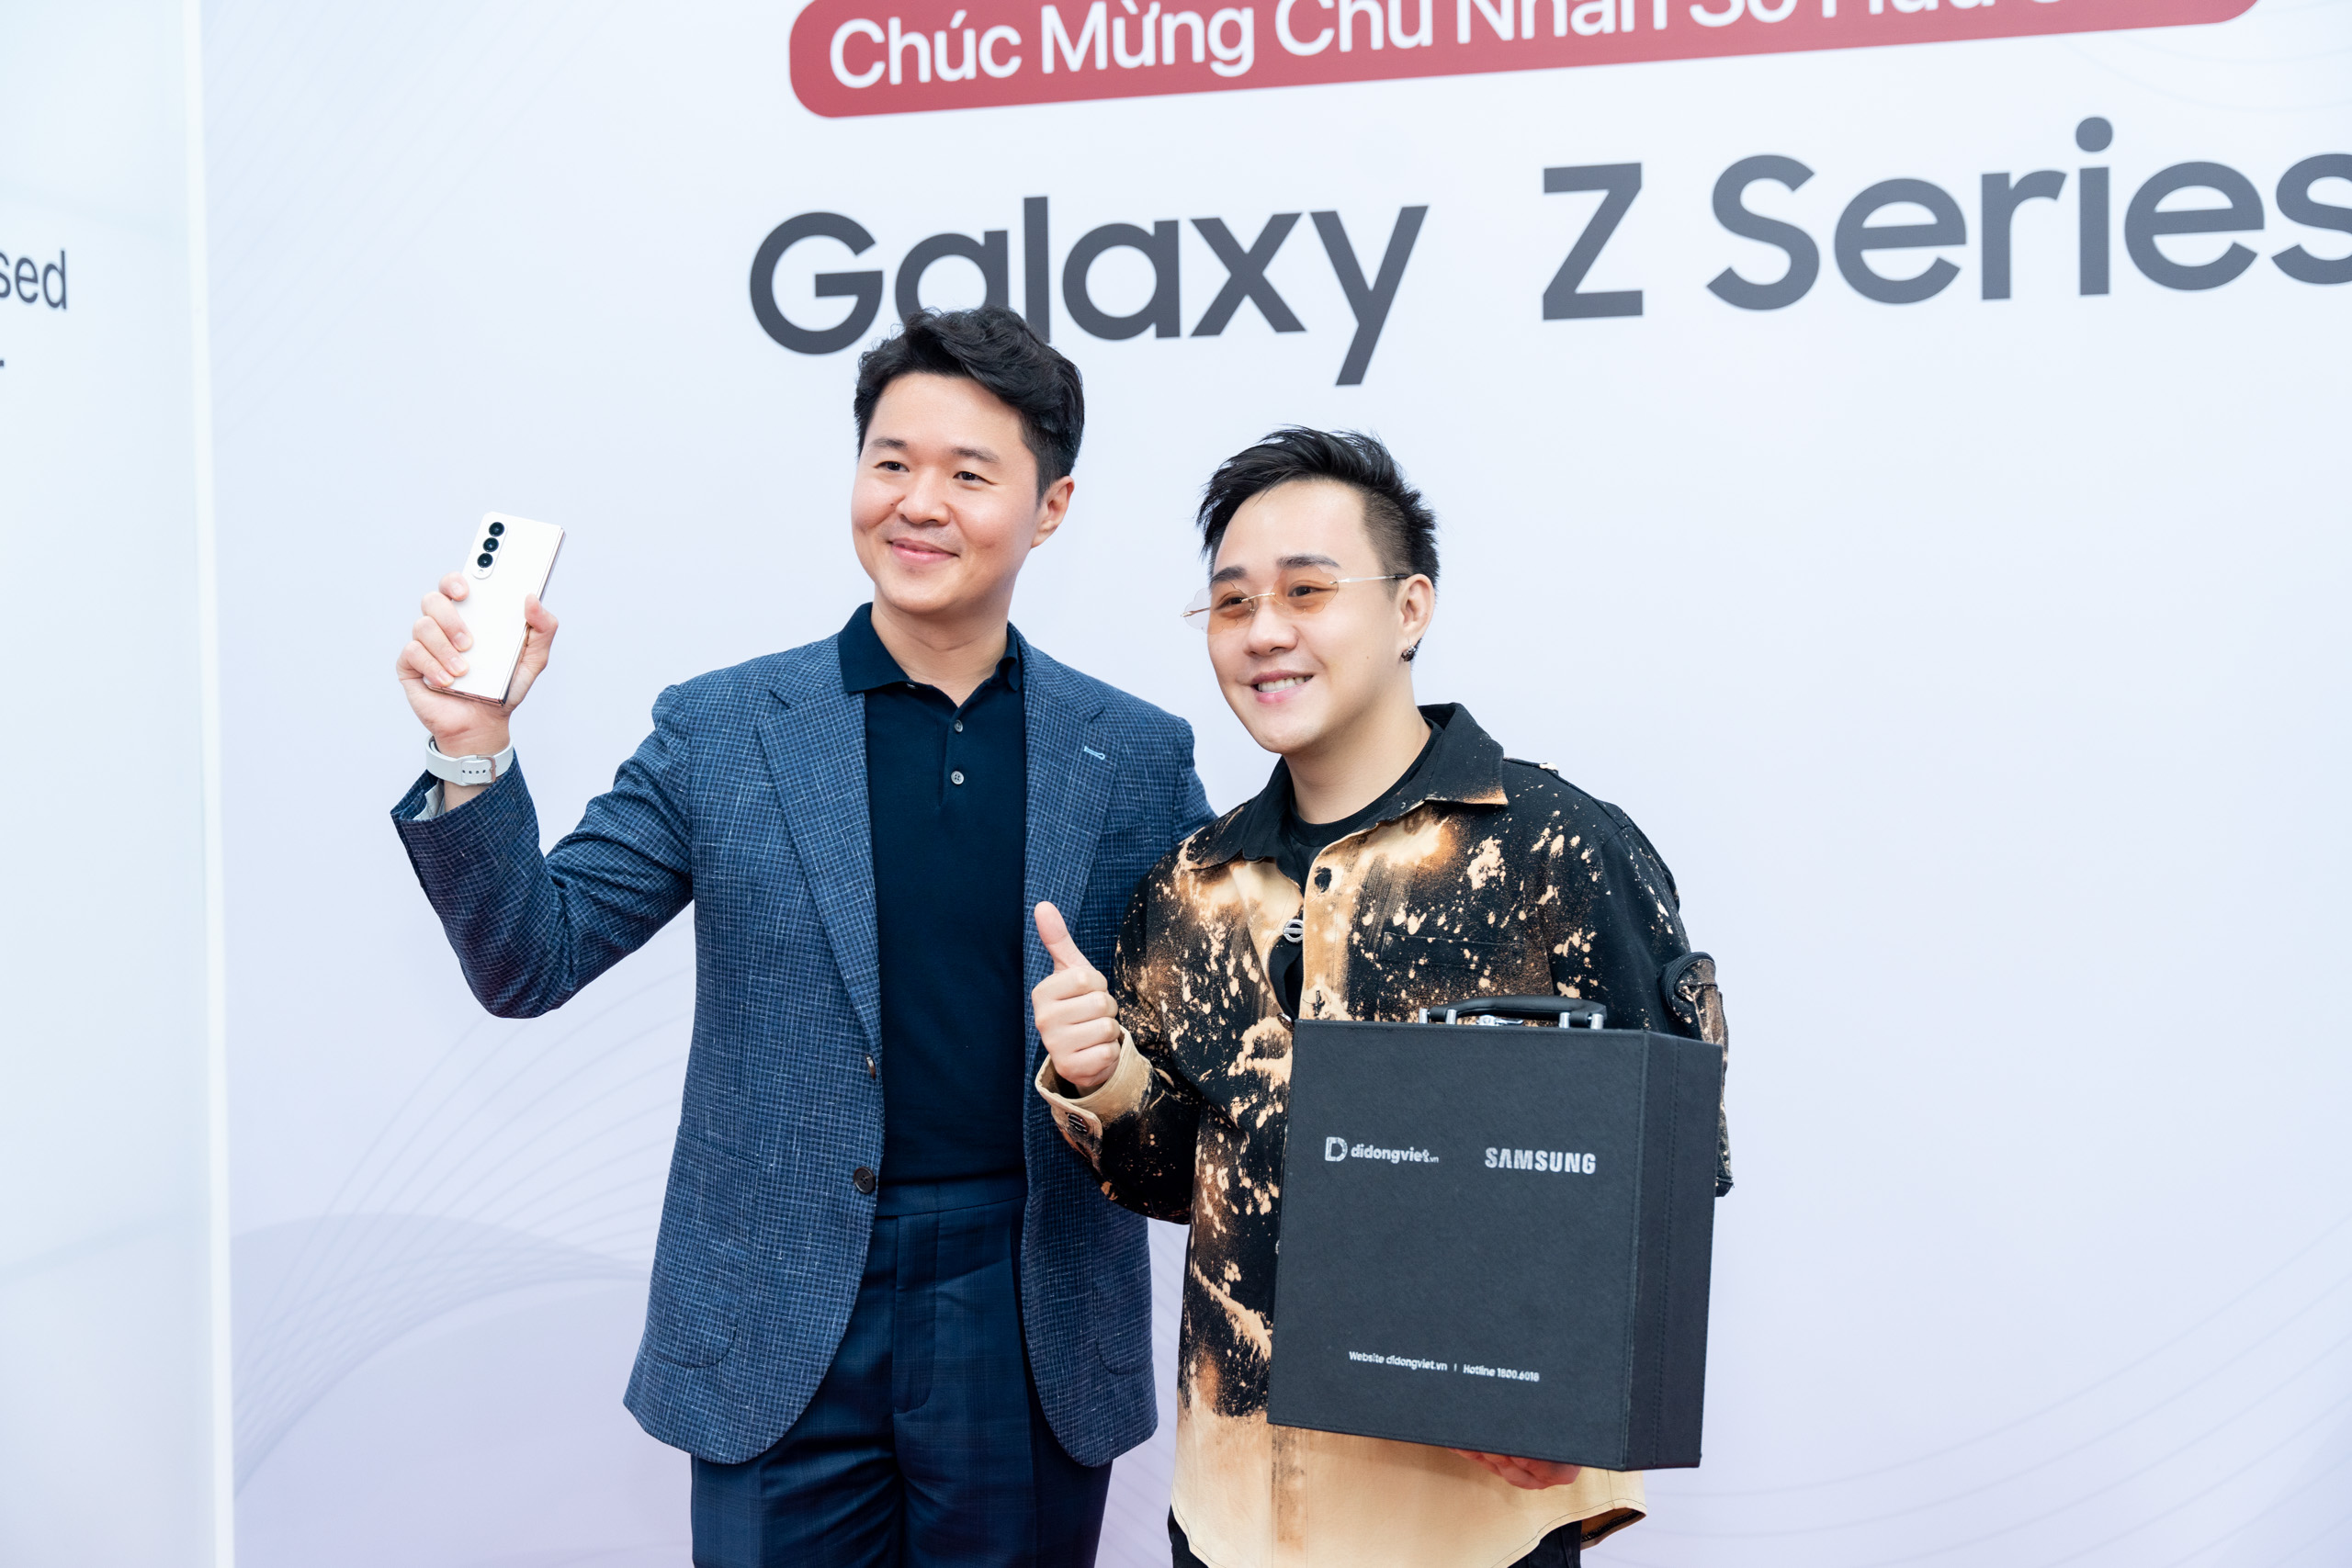 MC Trác Thuý Miêu, Trung Quân Idol, Stylist Thuận Nguyễn… chọn Trade-in lên đời Galaxy Z Fold4 và Z Flip4